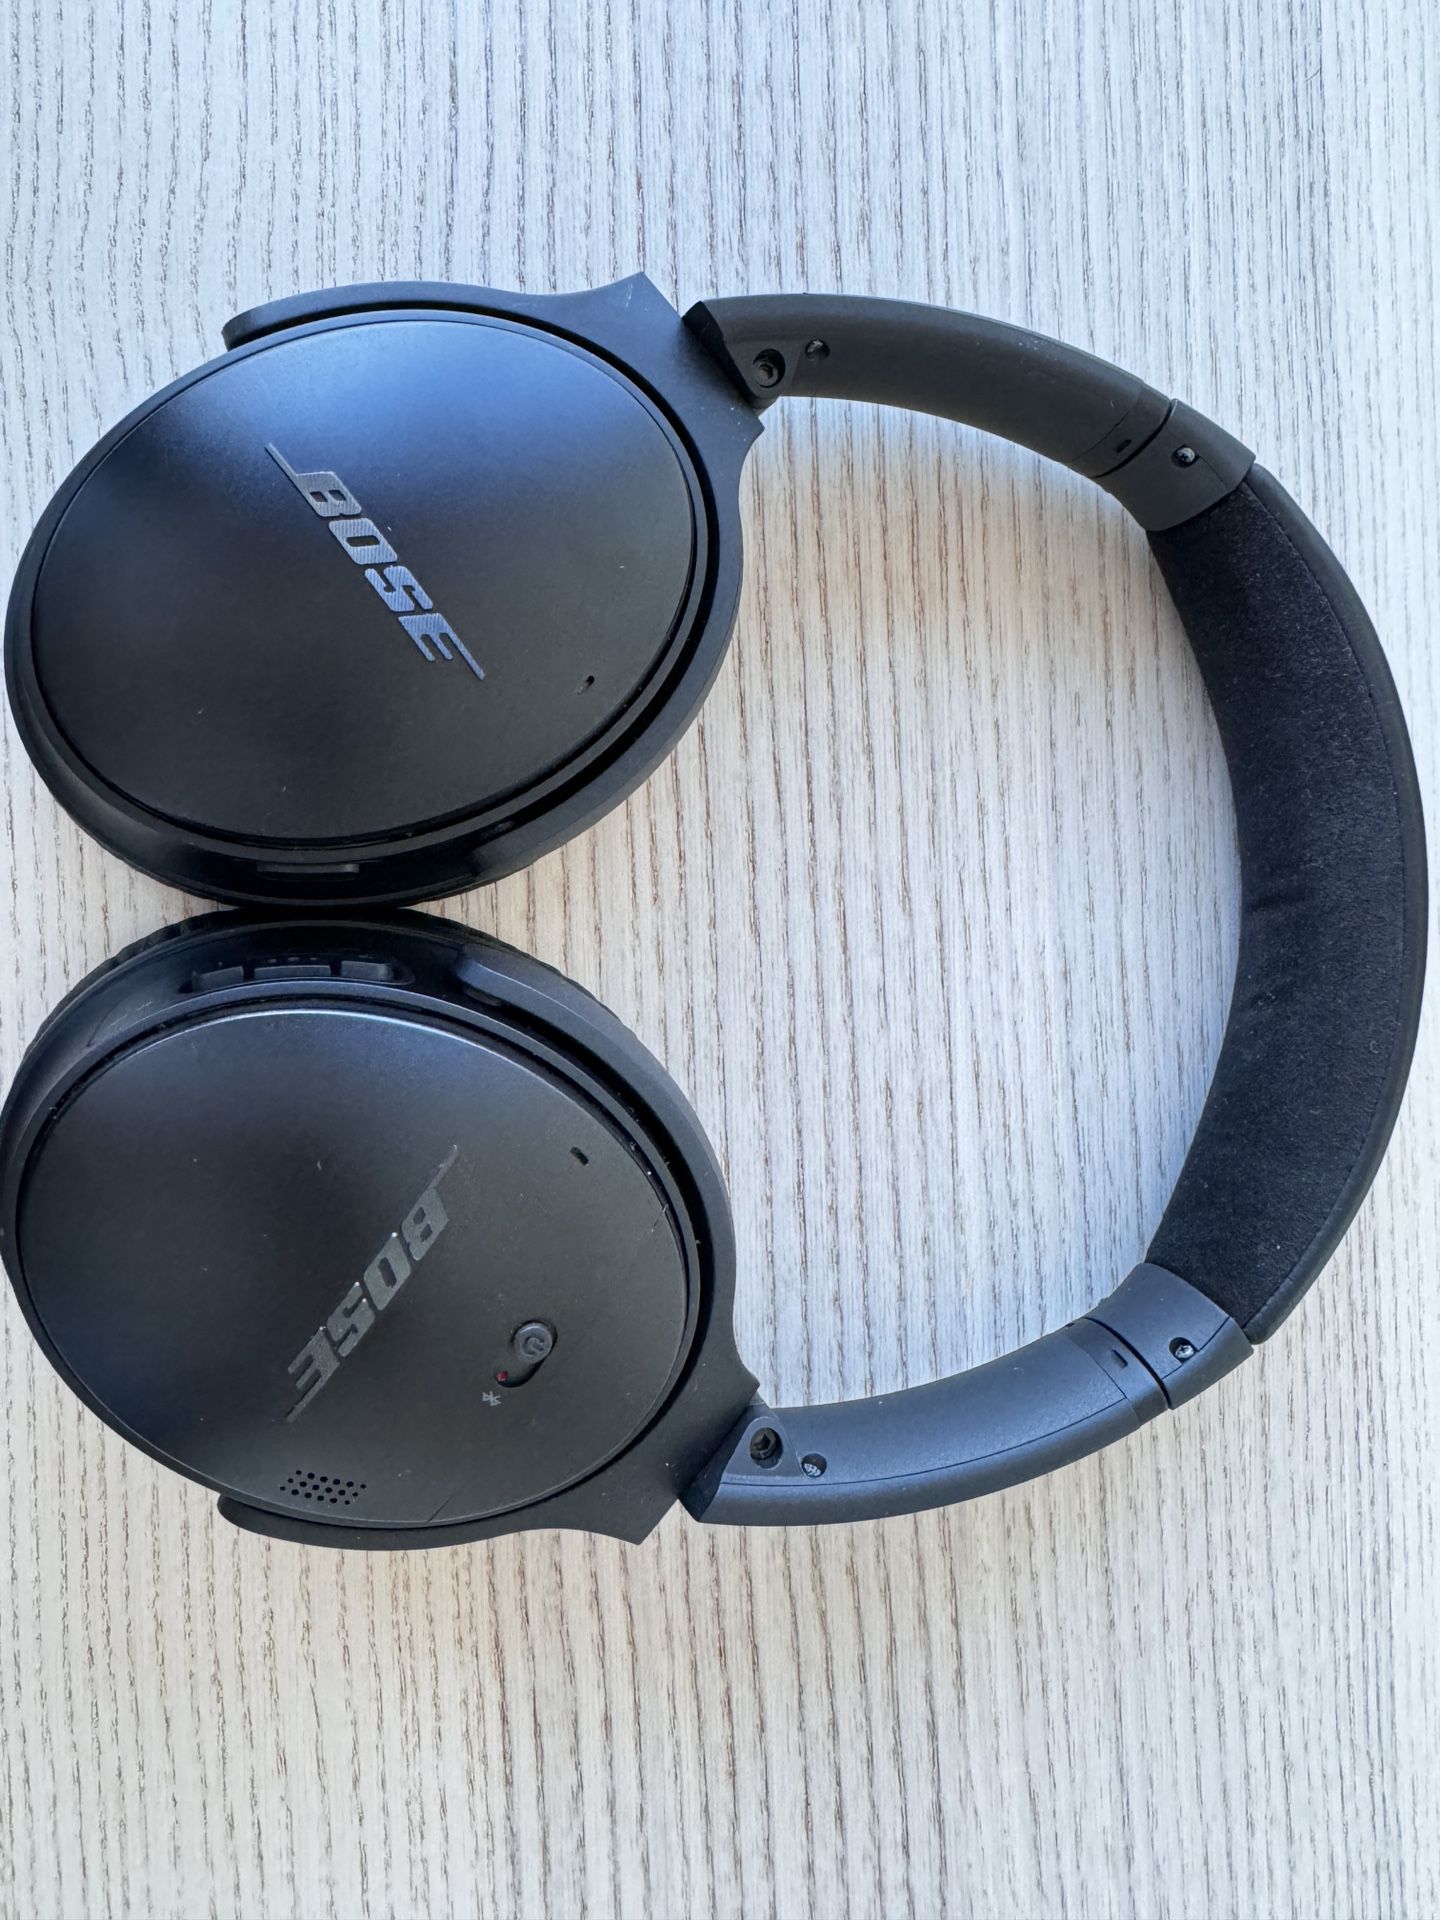 Bose QuietComfort Headphones Wireless